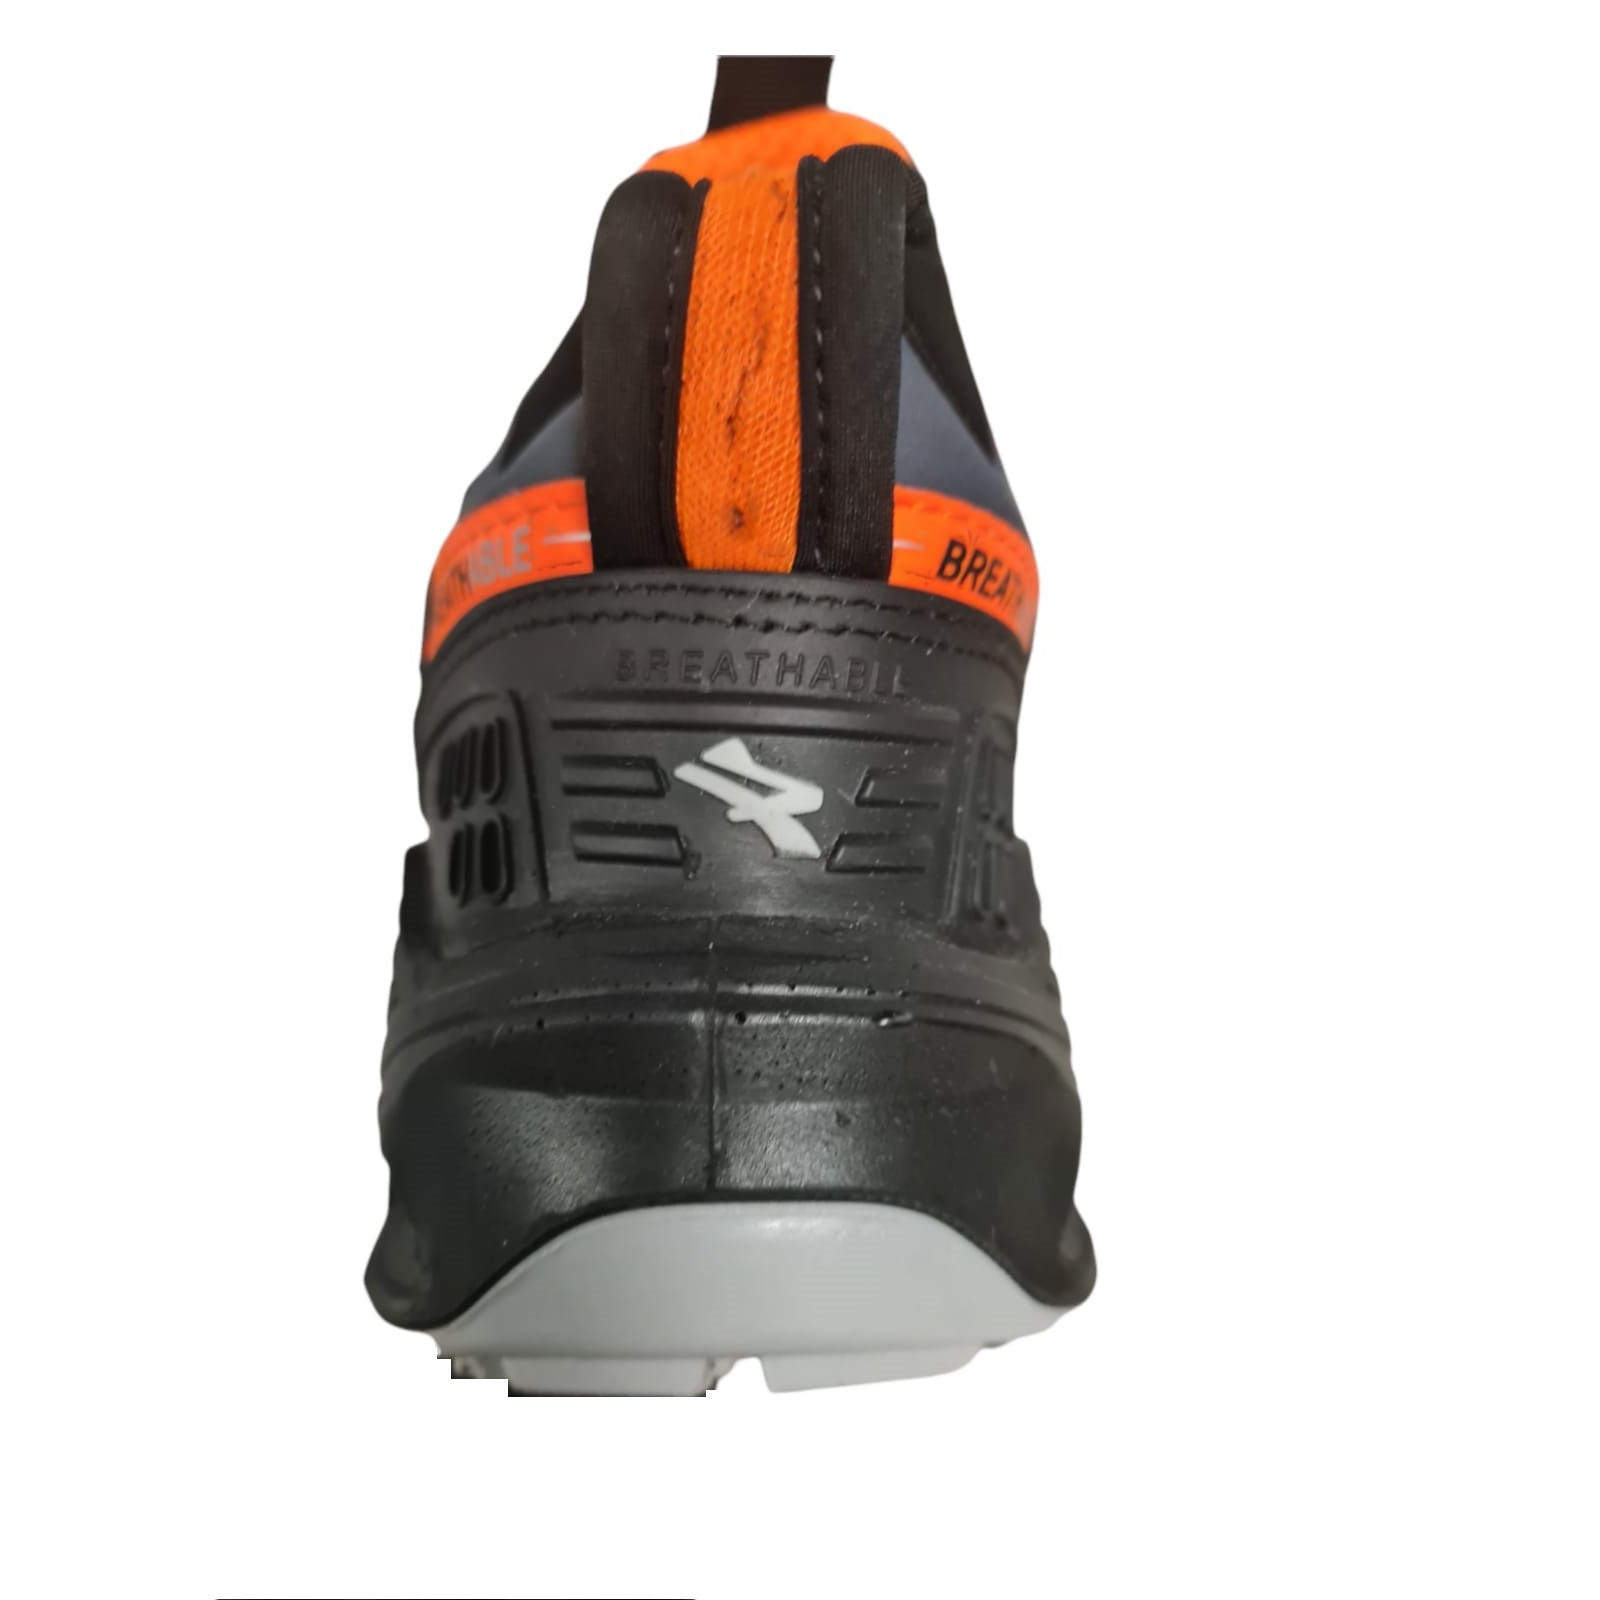 Chaussures de sécurité S1P Ryder - U power - Taille 43 5